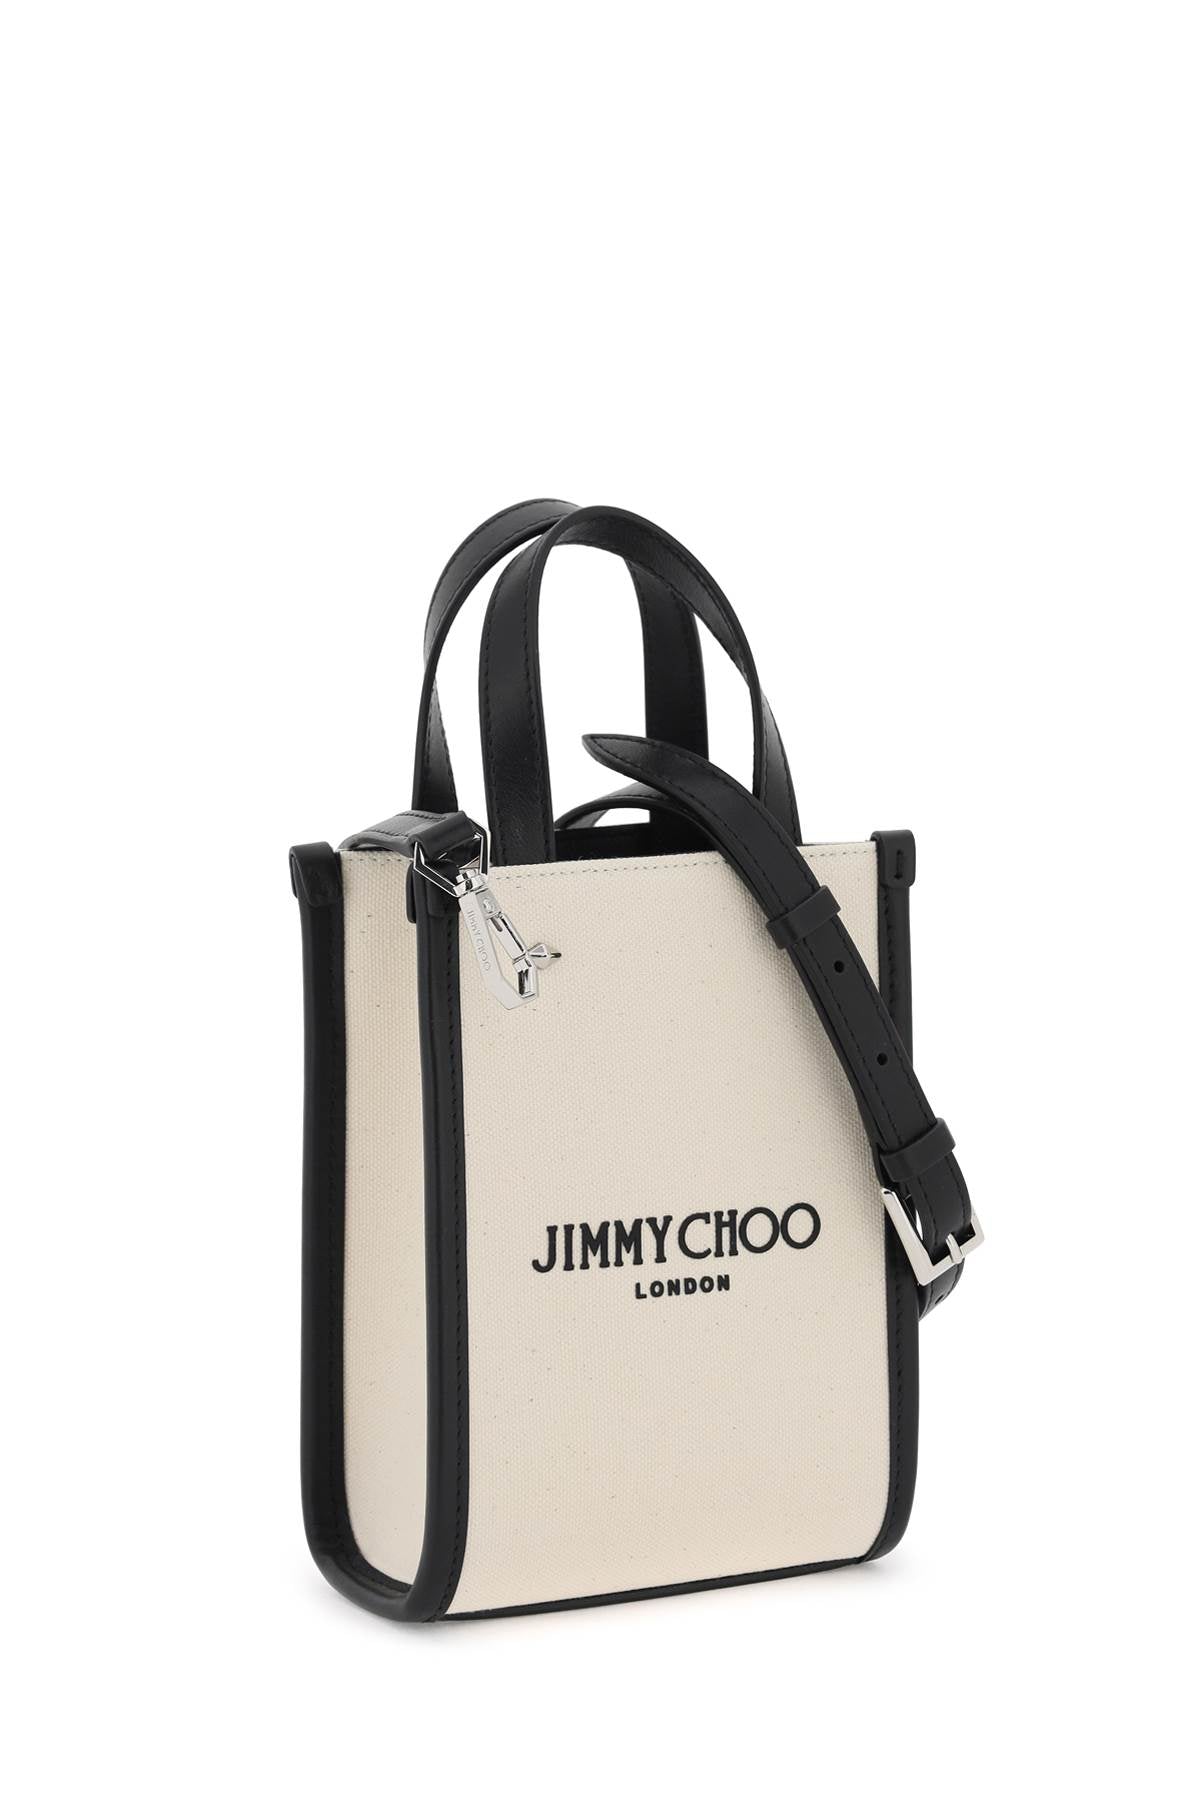 Jimmy choo n/s mini tote bag-2